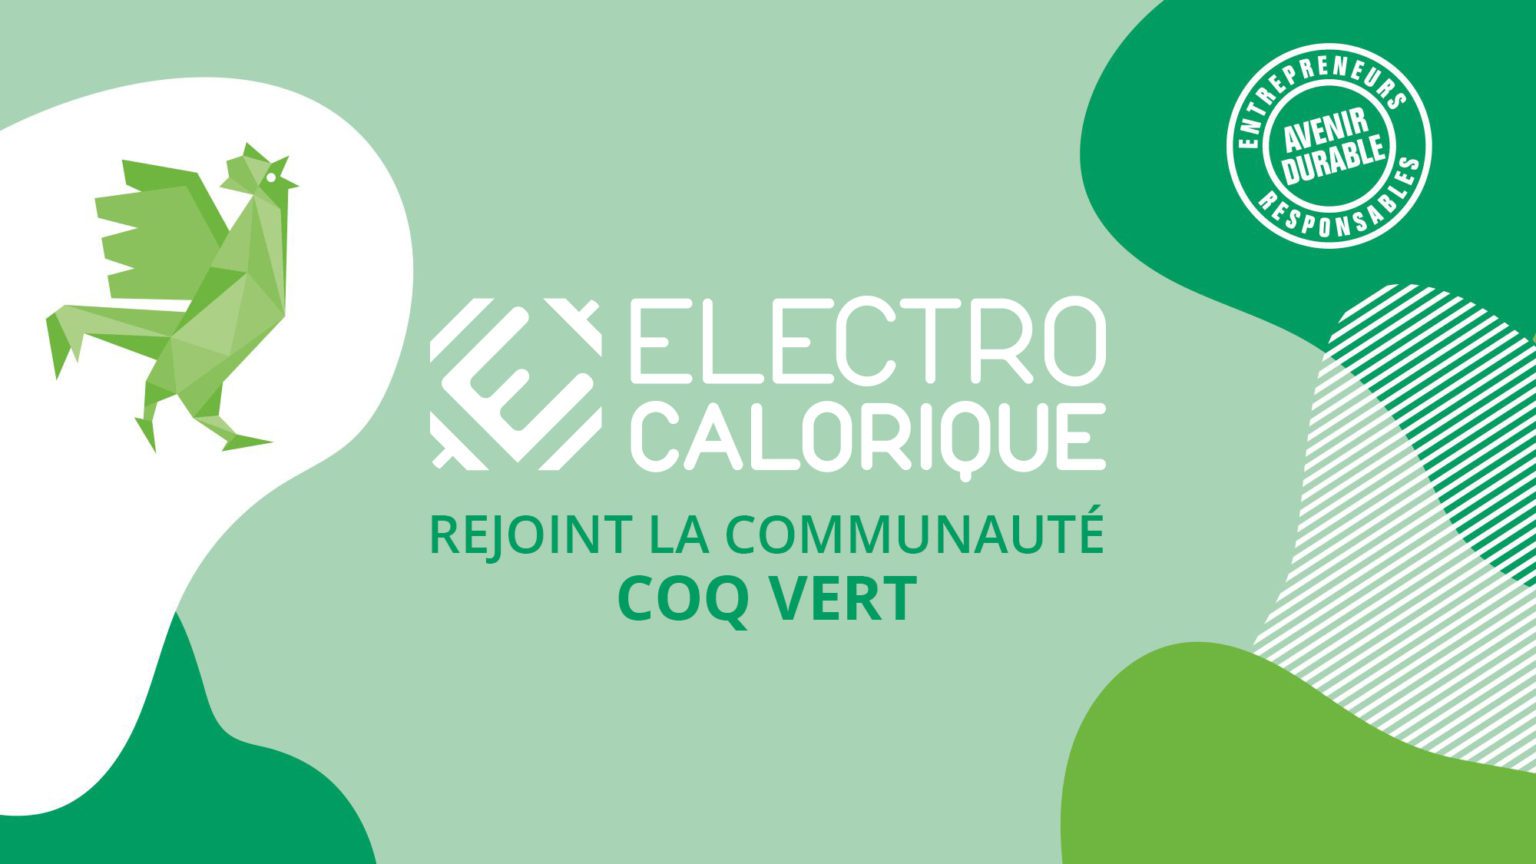 ELECTRO CALORIQUE REJOINT LA COMMUNAUTÉ COQ VERT !